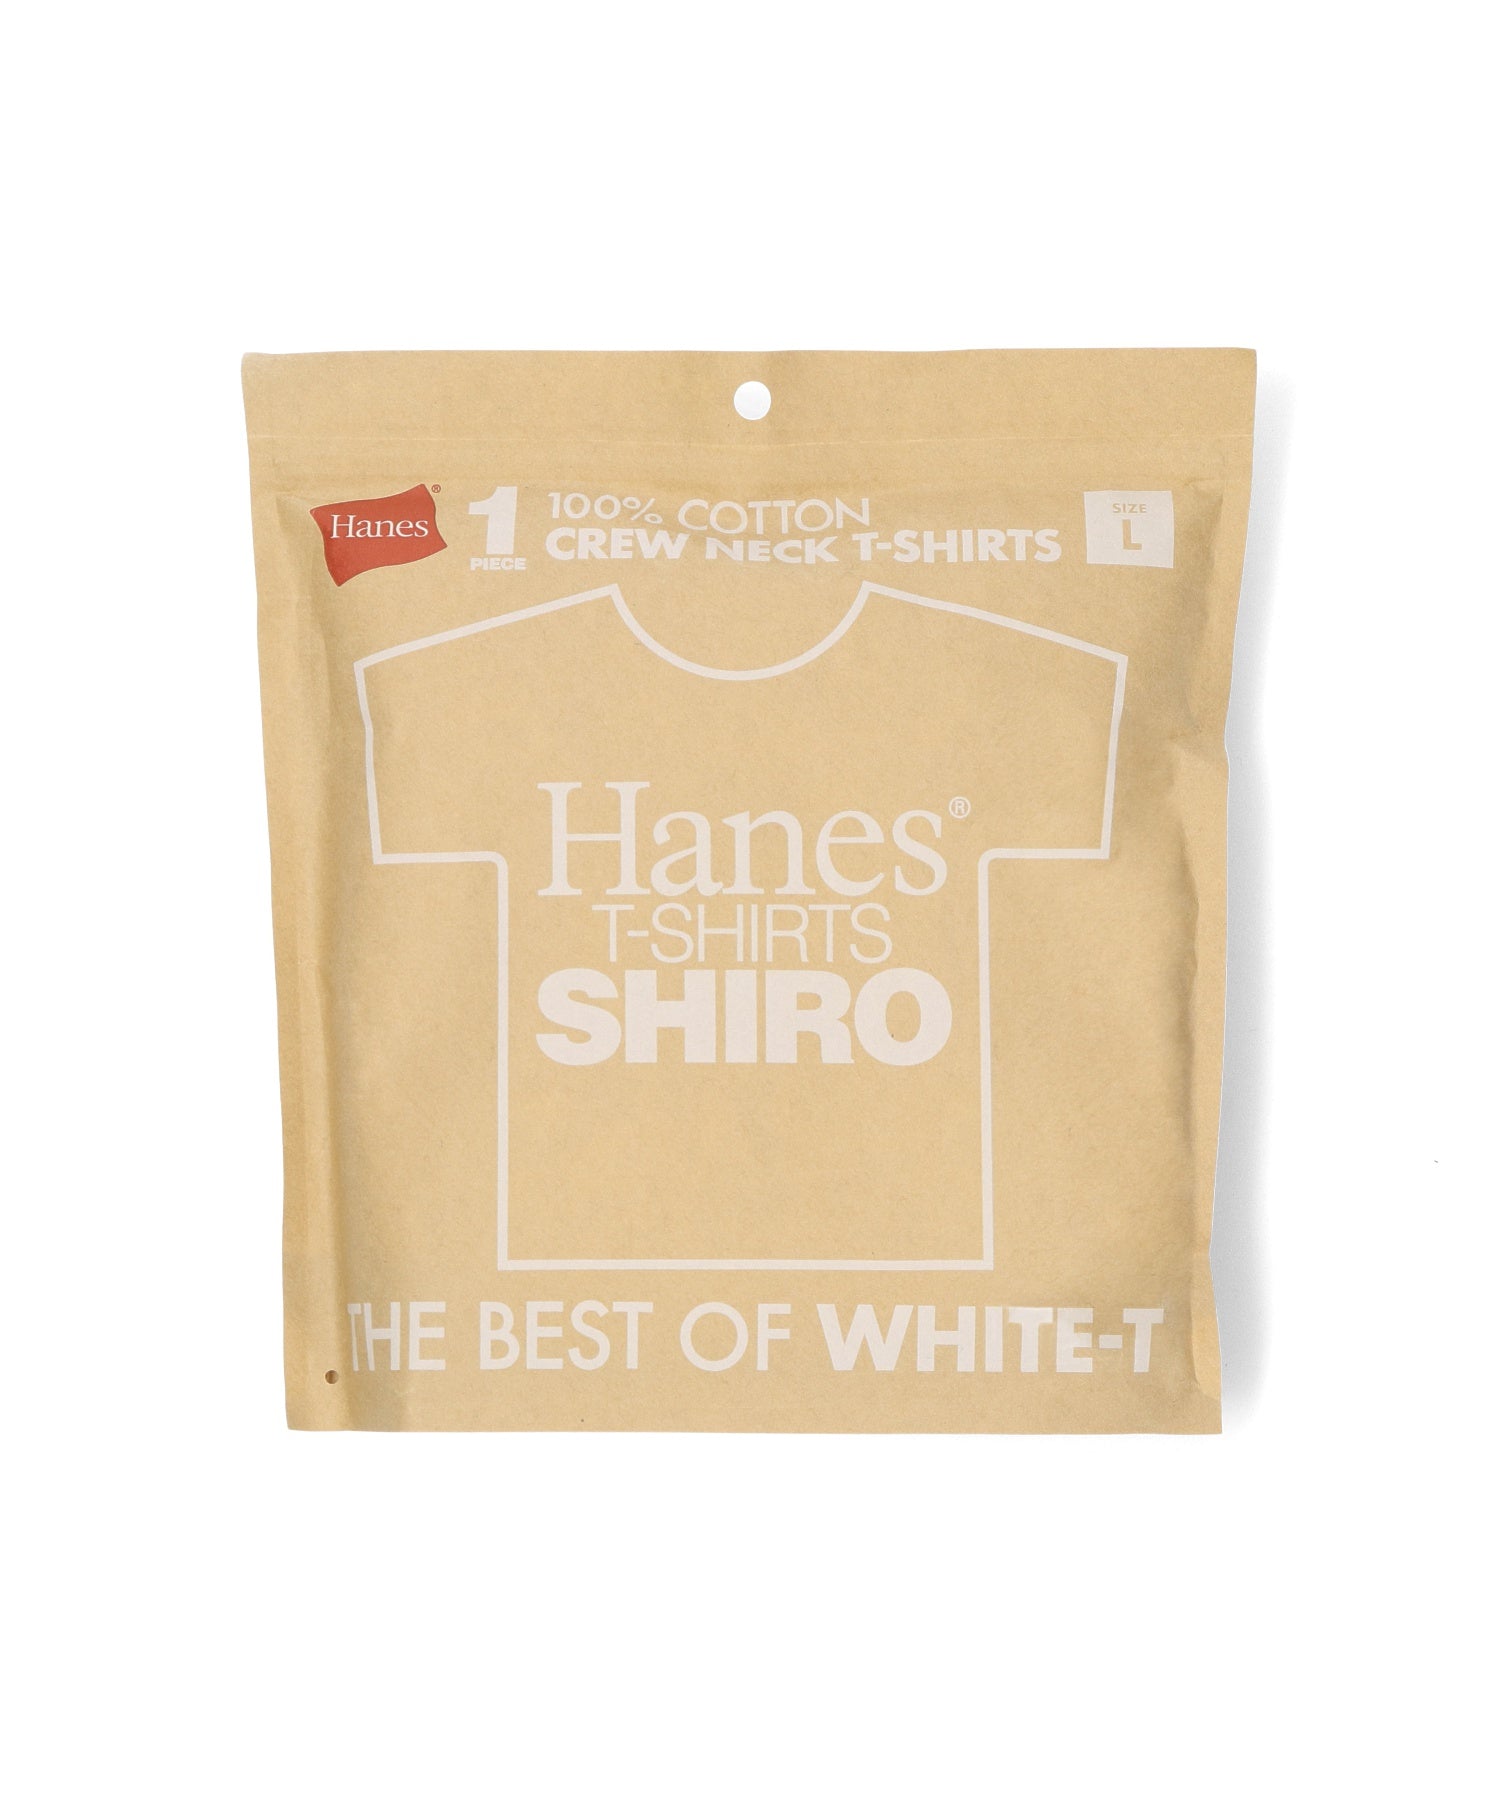 Hanes/ヘインズ/1P T-SHIRTS SHIRO/HM1X201